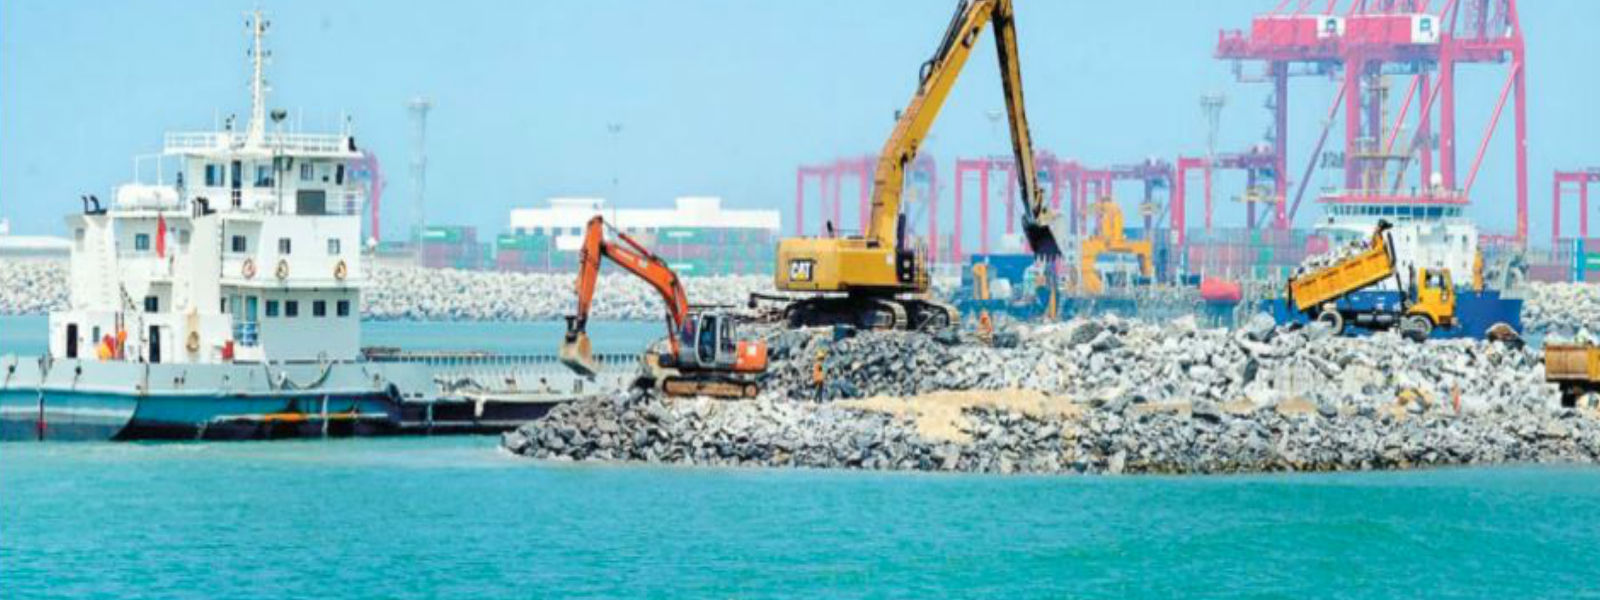 Port City celebrates adding 269 hectares of land